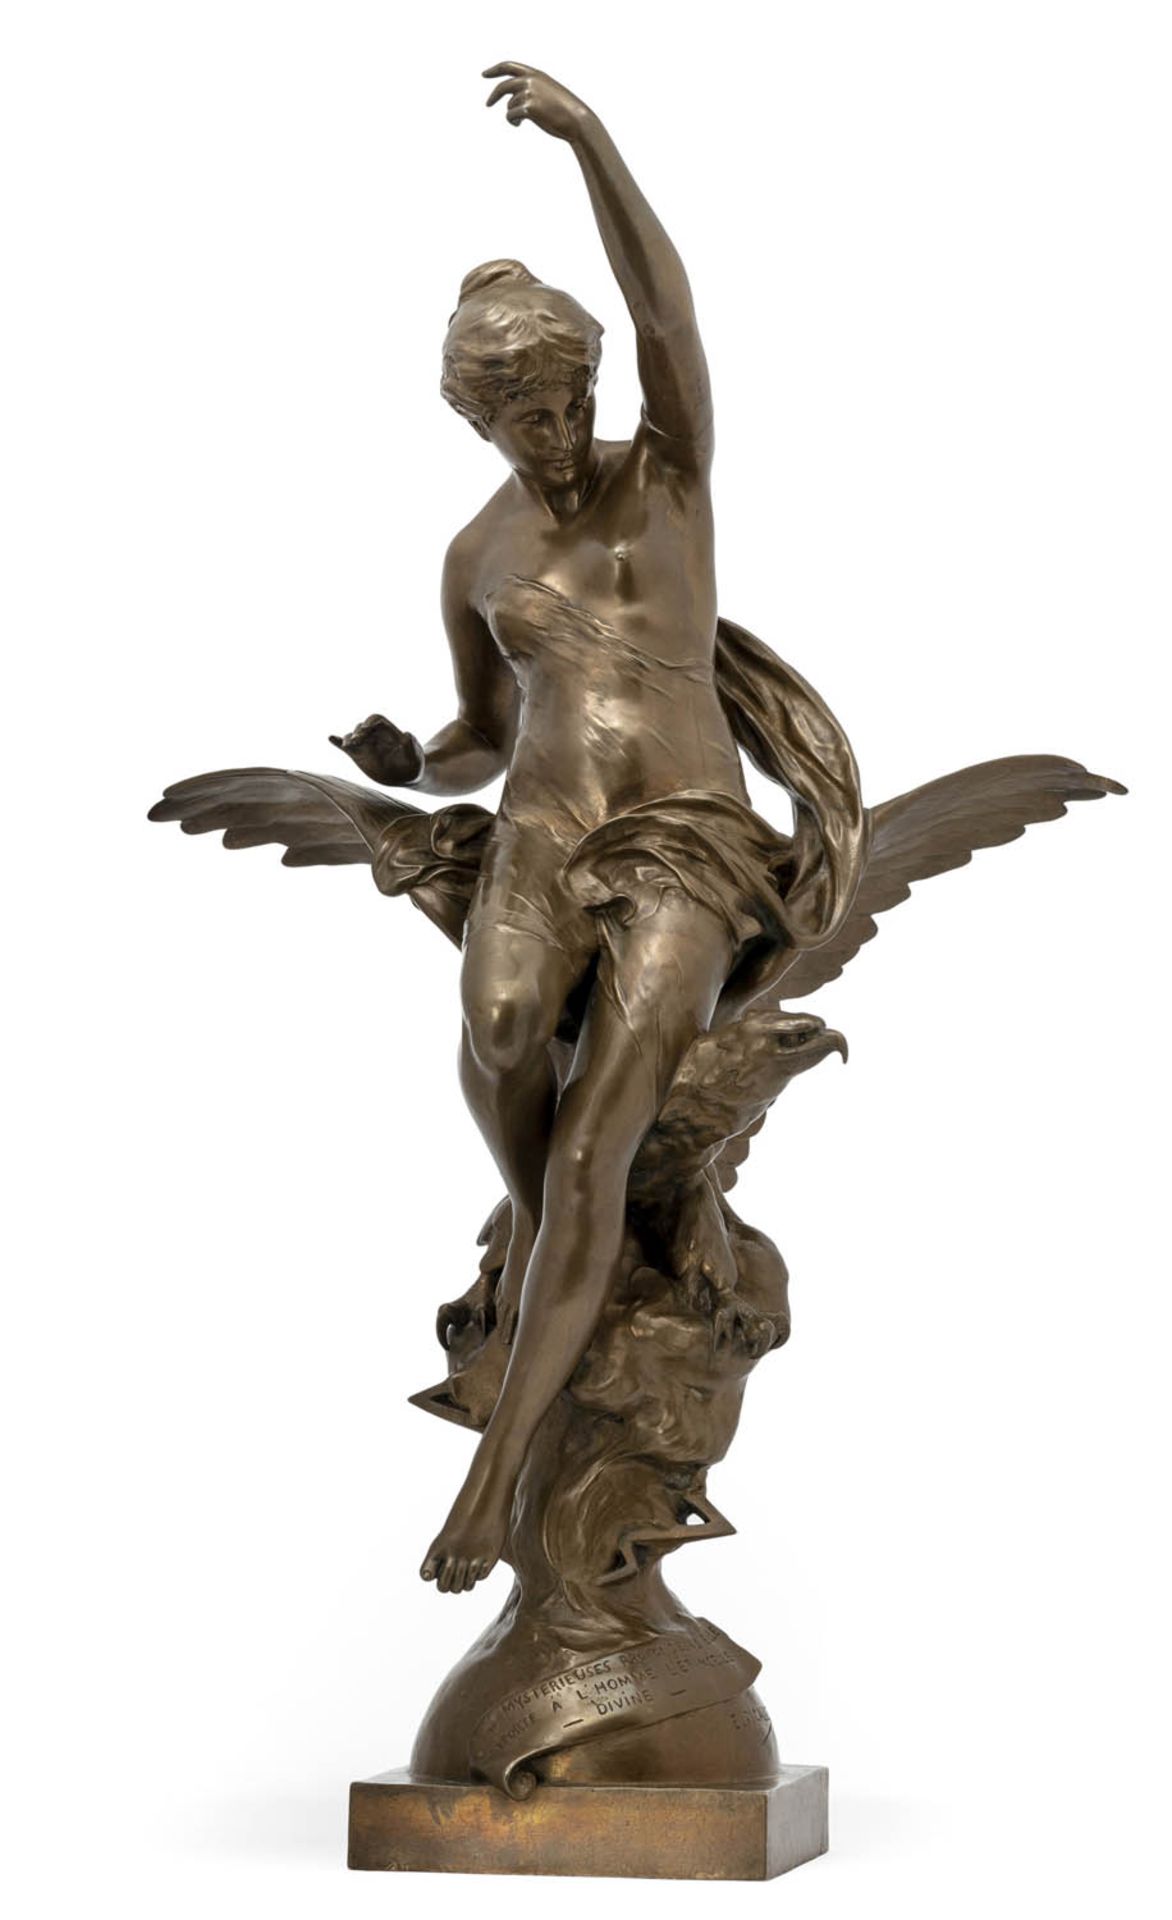 Picault, Emile LouisFrankreich, 1833 - 1915H. 88 cm"L'inspiration" oder Hebe und der Adler.